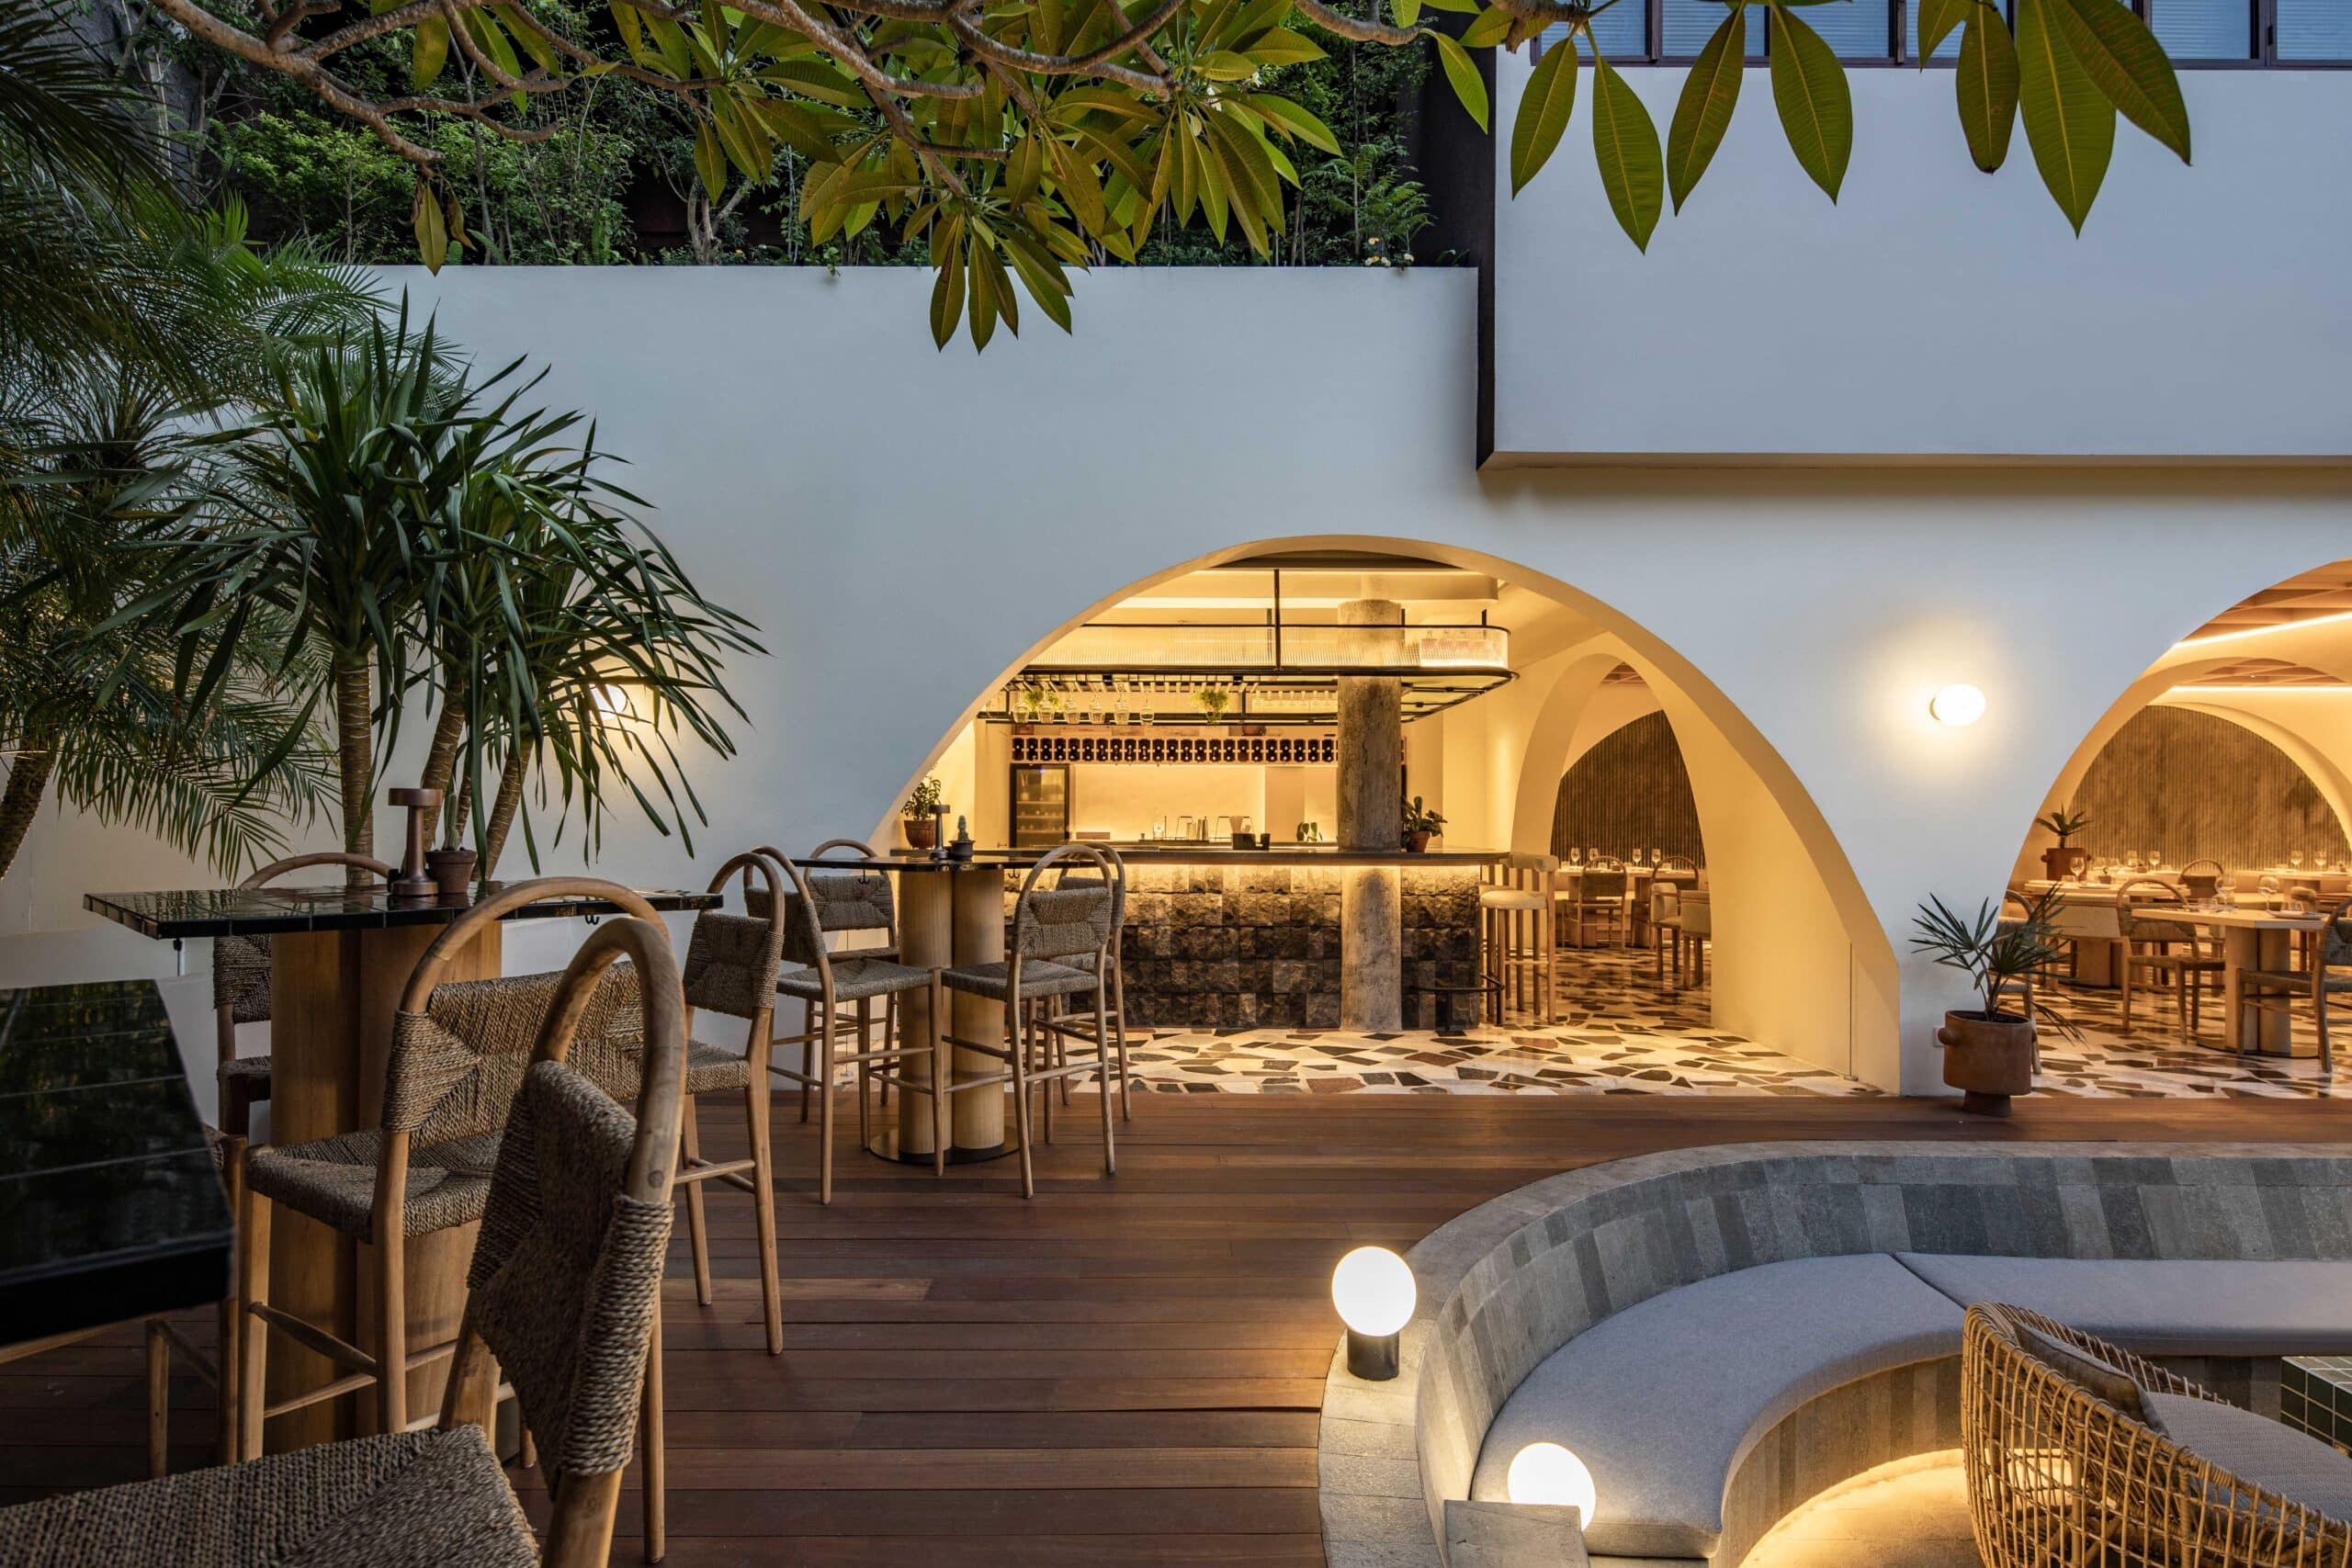 Restaurant Design - Luma Bali - Interior Design - Architecture - Architect Bali - Arch